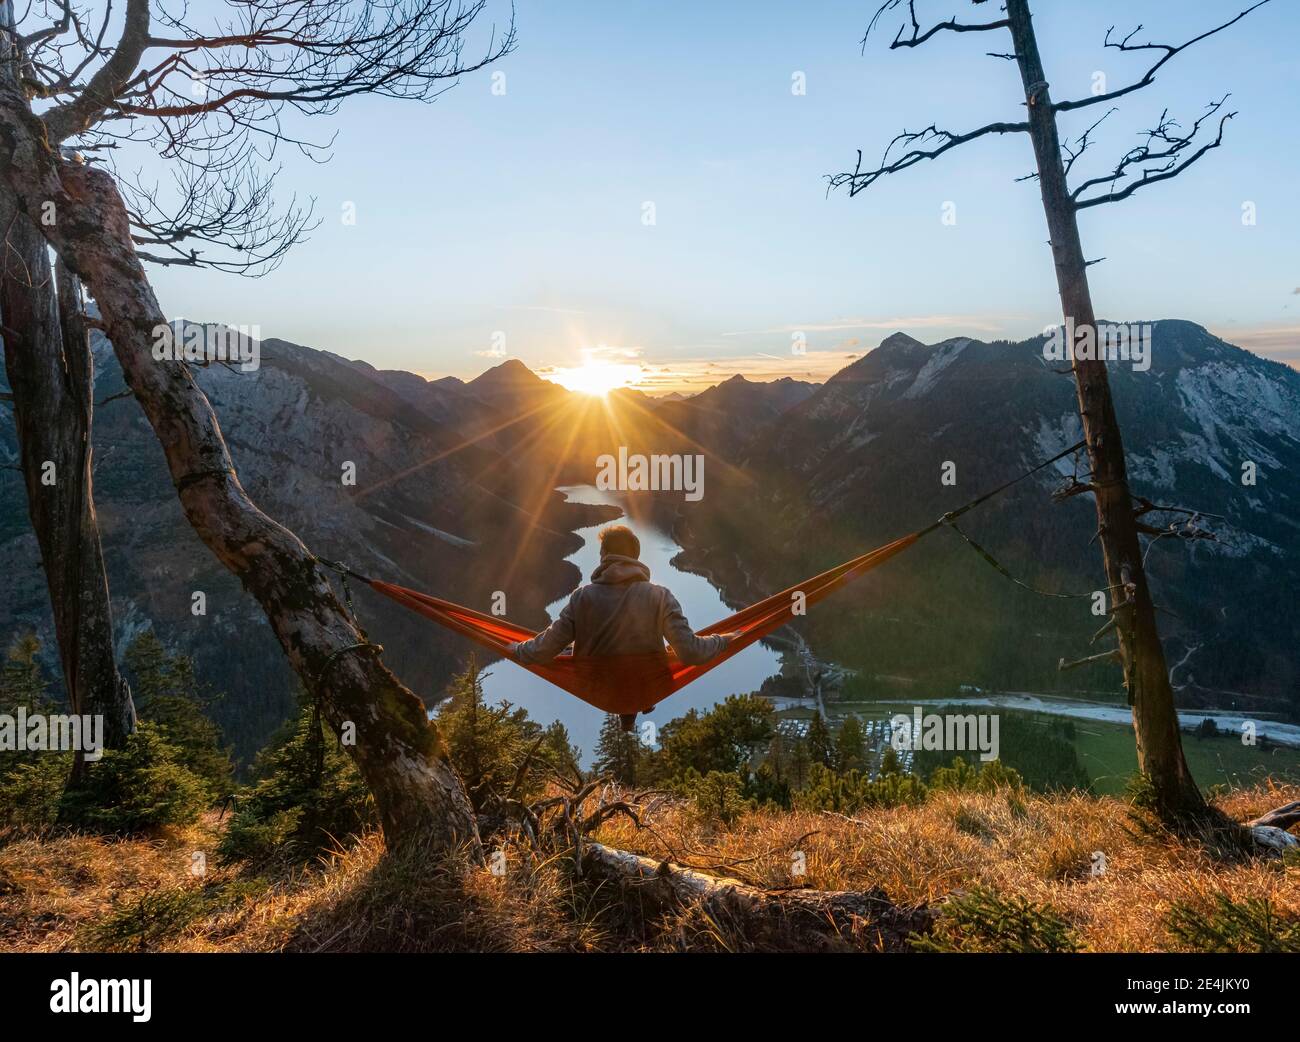 Giovane seduto in un'amaca rossa, vista panoramica sulle montagne con lago, stella solare, tramonto, Plansee, Tirolo, Austria Foto Stock